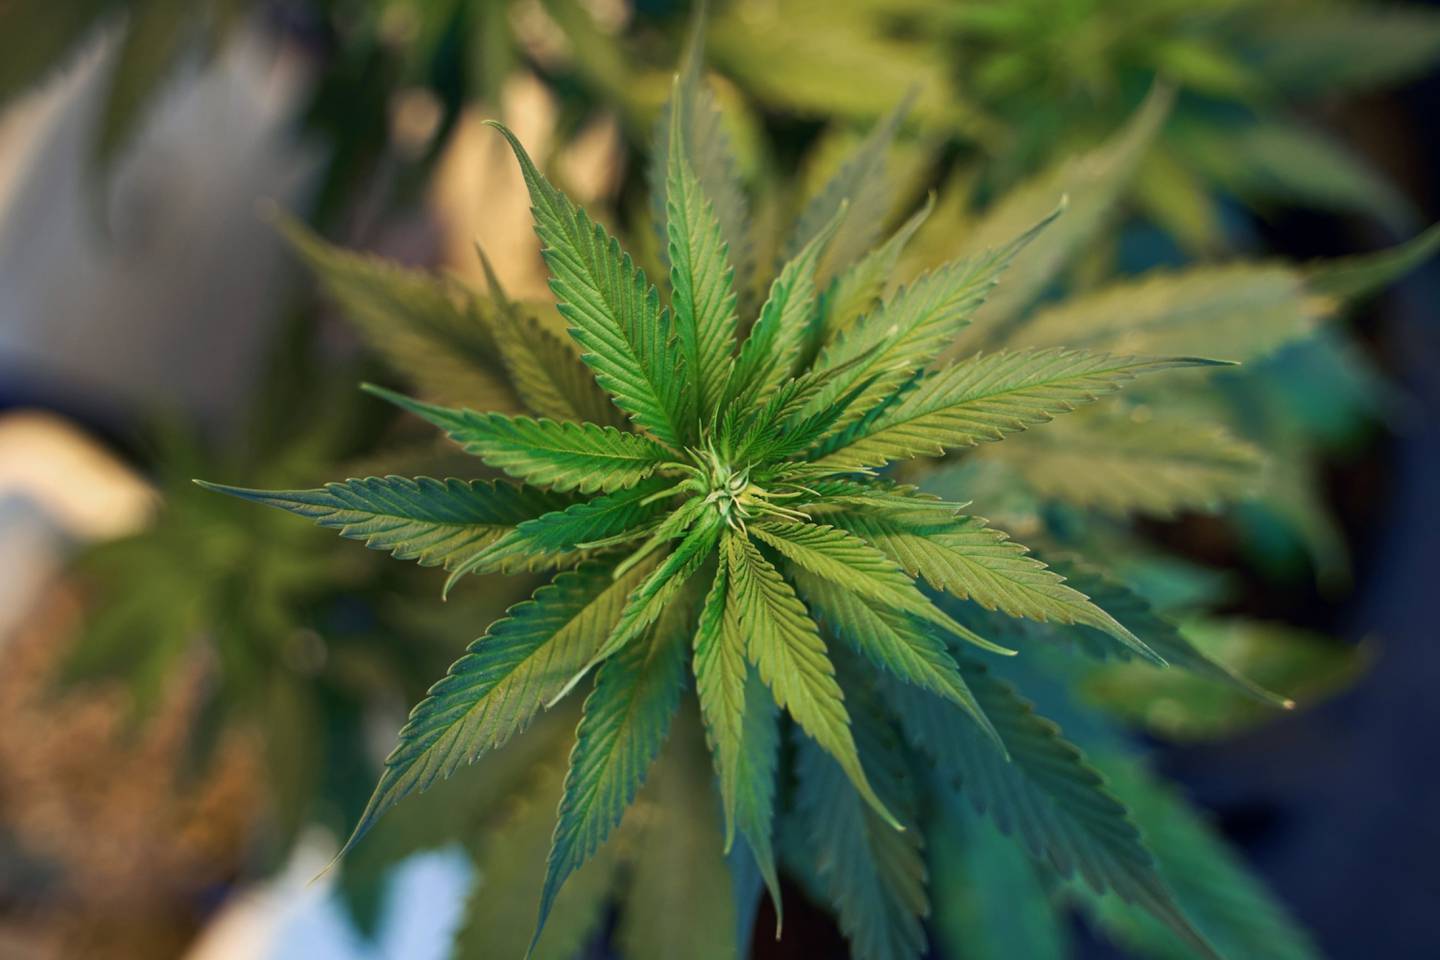 Defensores argumentam que a legalização da planta é uma questão de liberdade pessoal